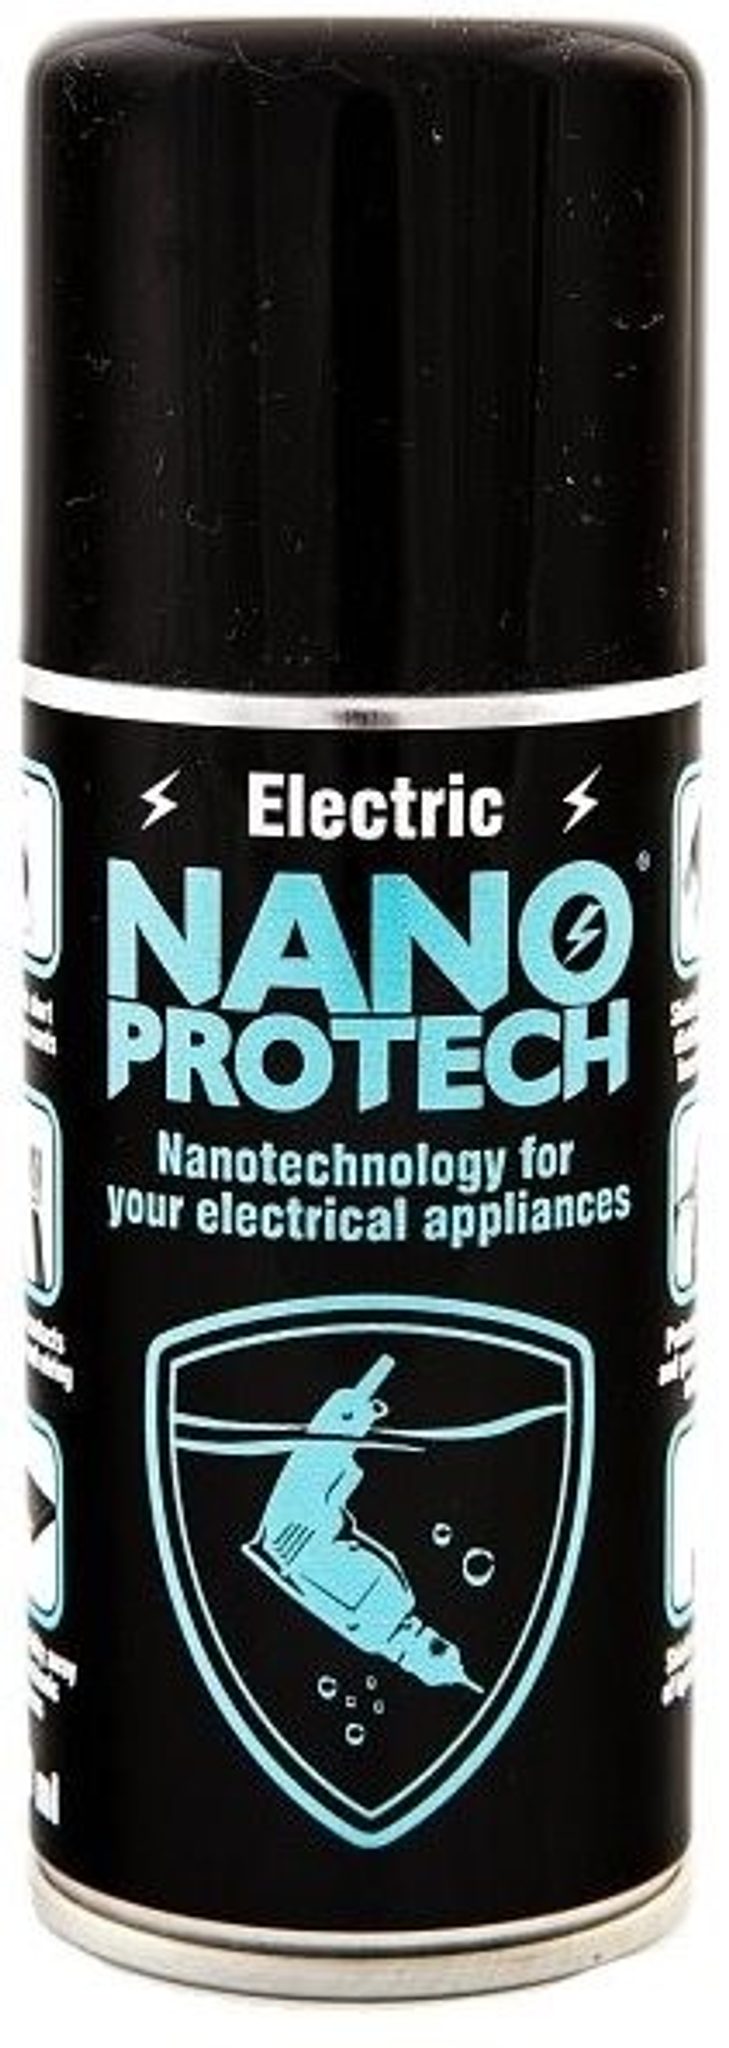 Nano Protech - ochrana elektroniky před vlhkostí